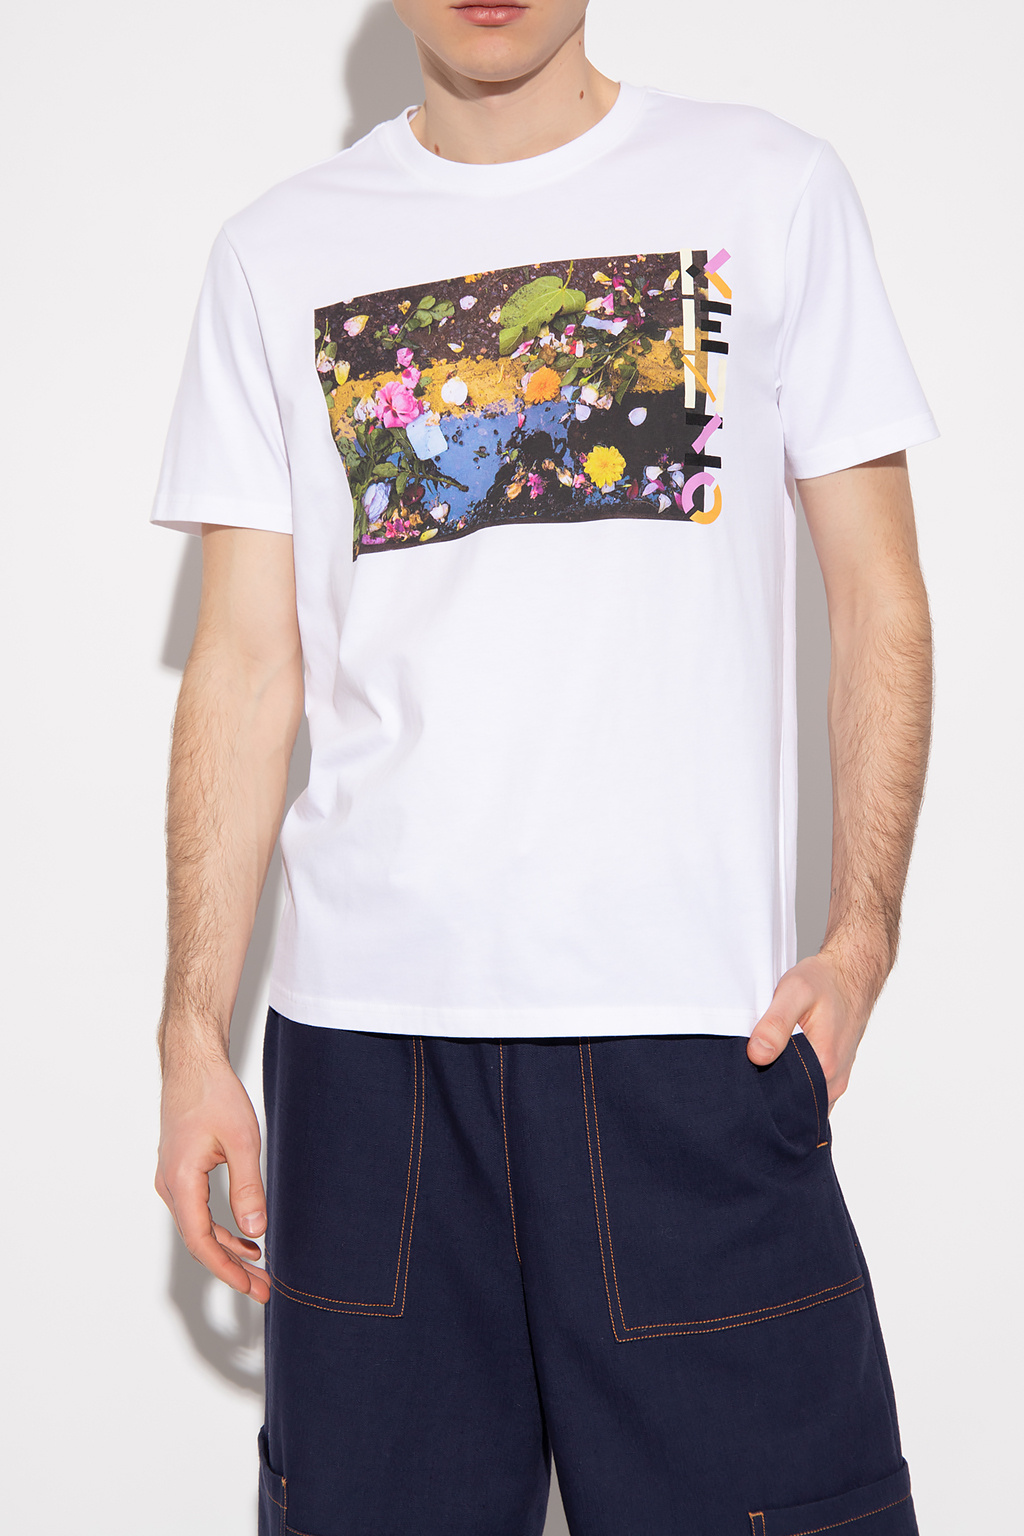 | IetpShops Origineel t-shirt met zeer geslaagde kleuren - Clothing | Kenzo Printed T